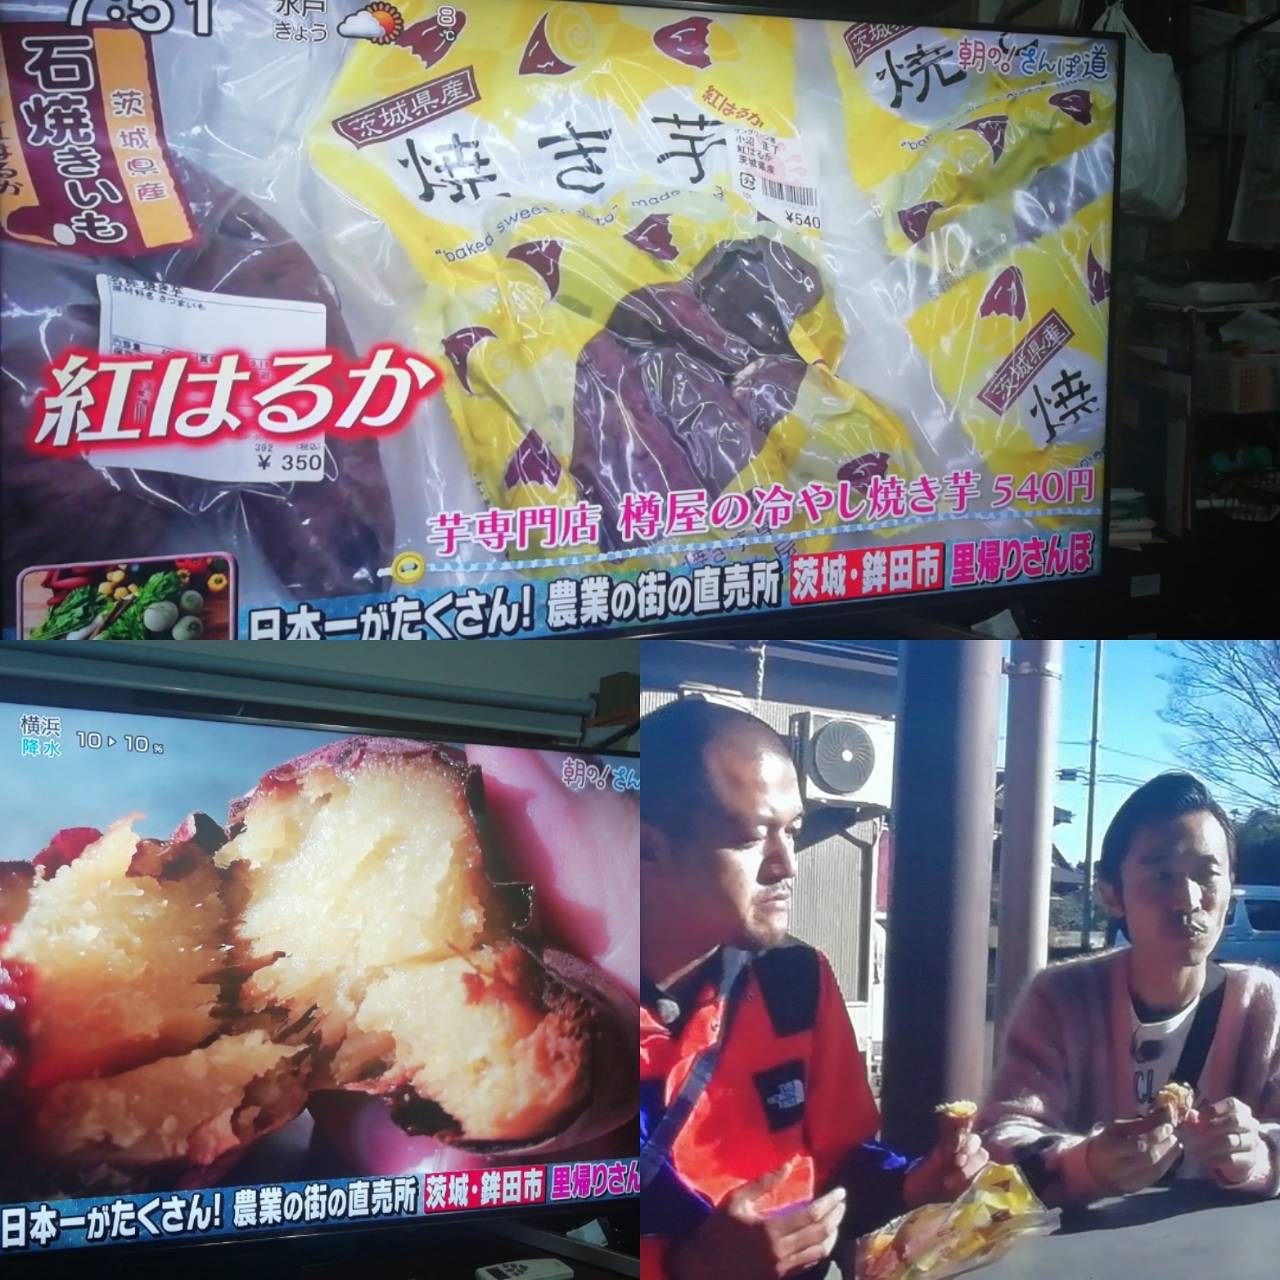 テレビで樽屋の焼き芋が紹介されました。